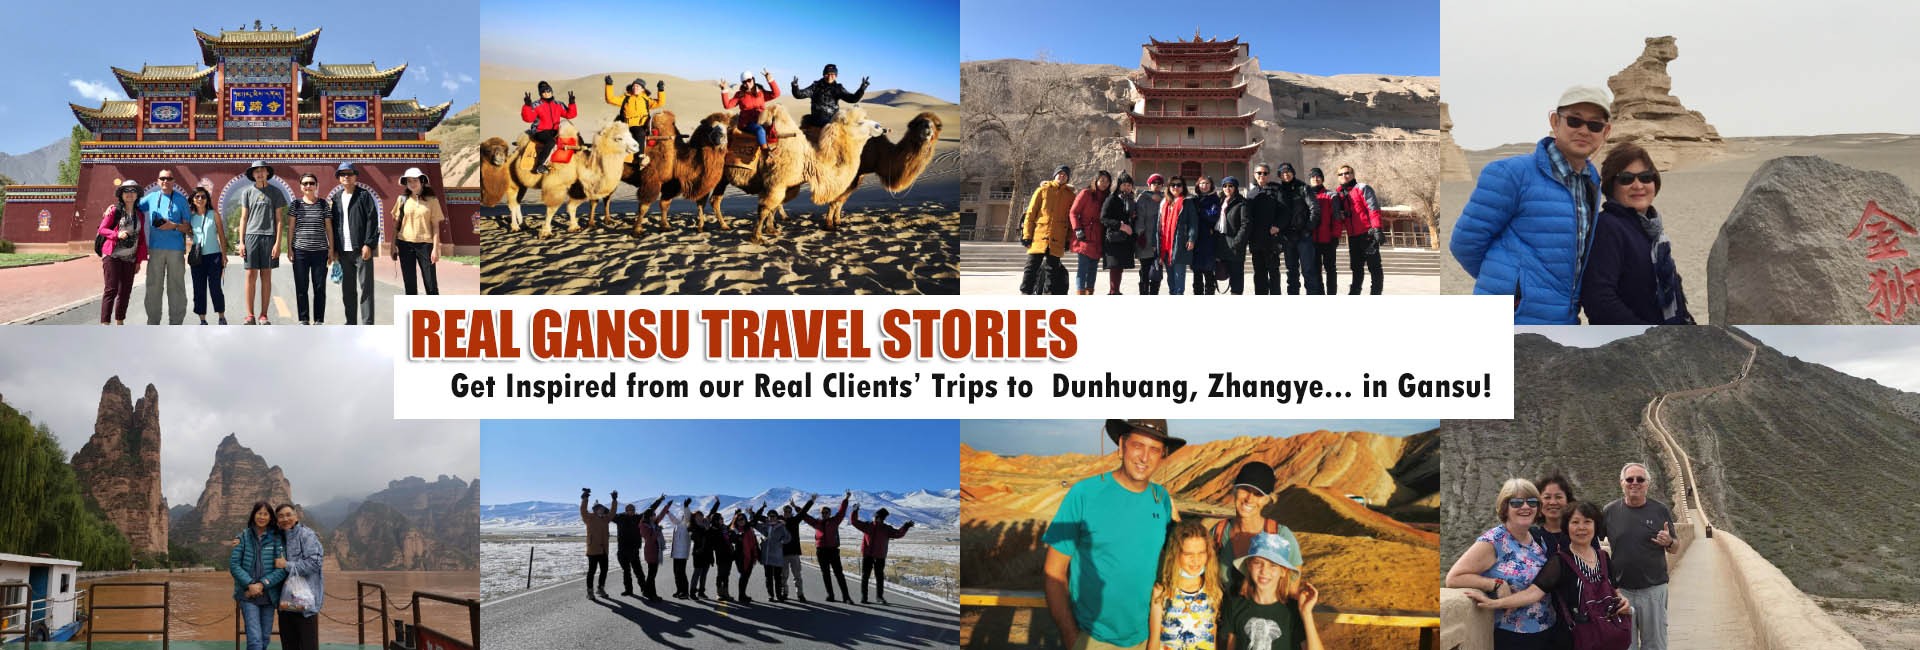 Gansu Travel Stories